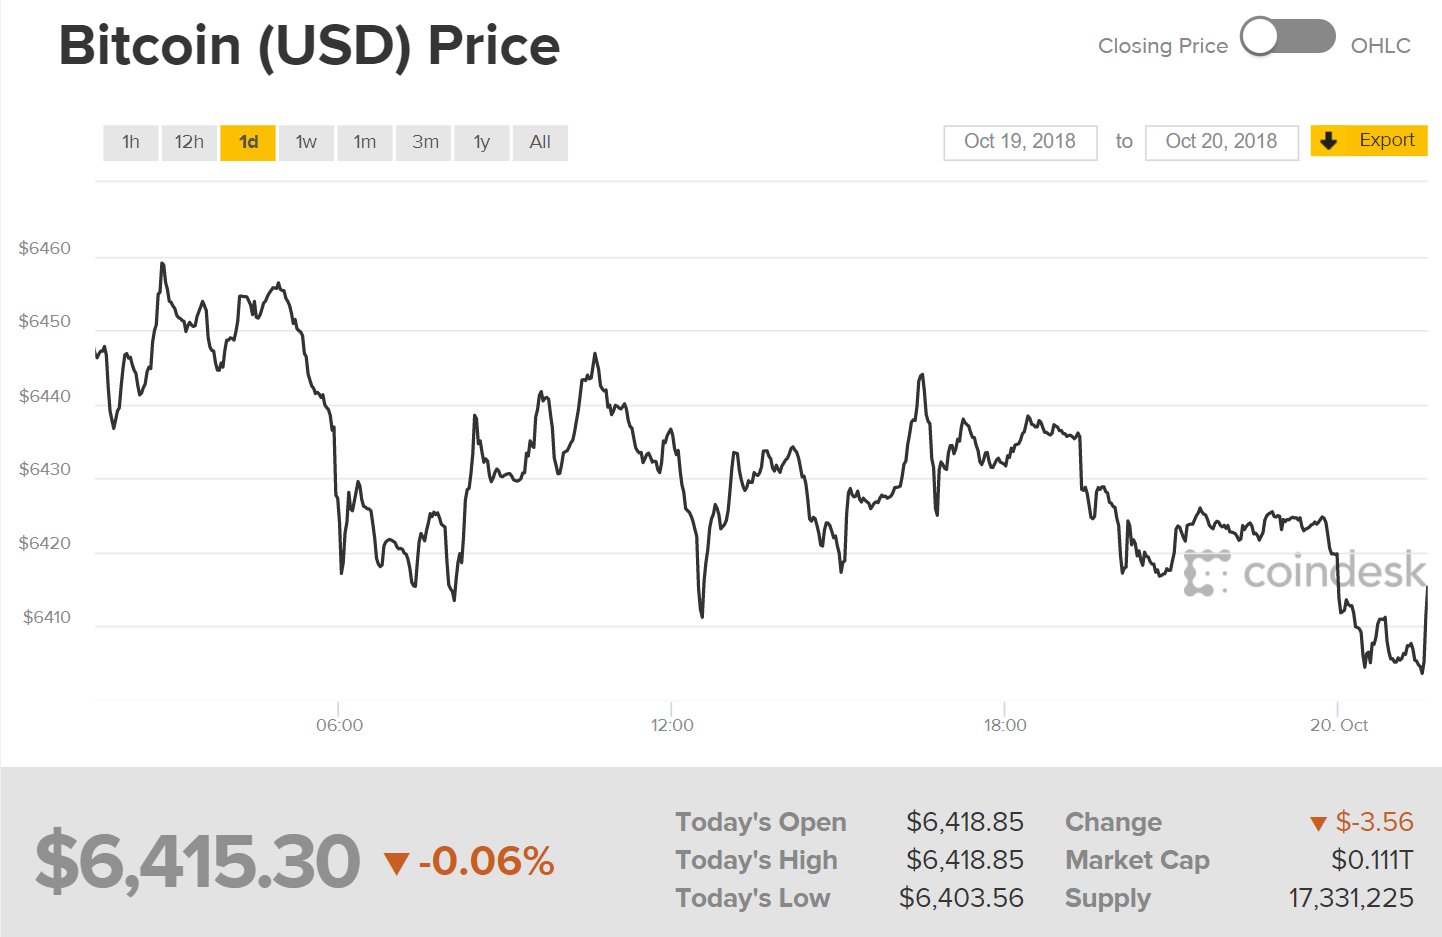 Diễn biến giá bitcoin